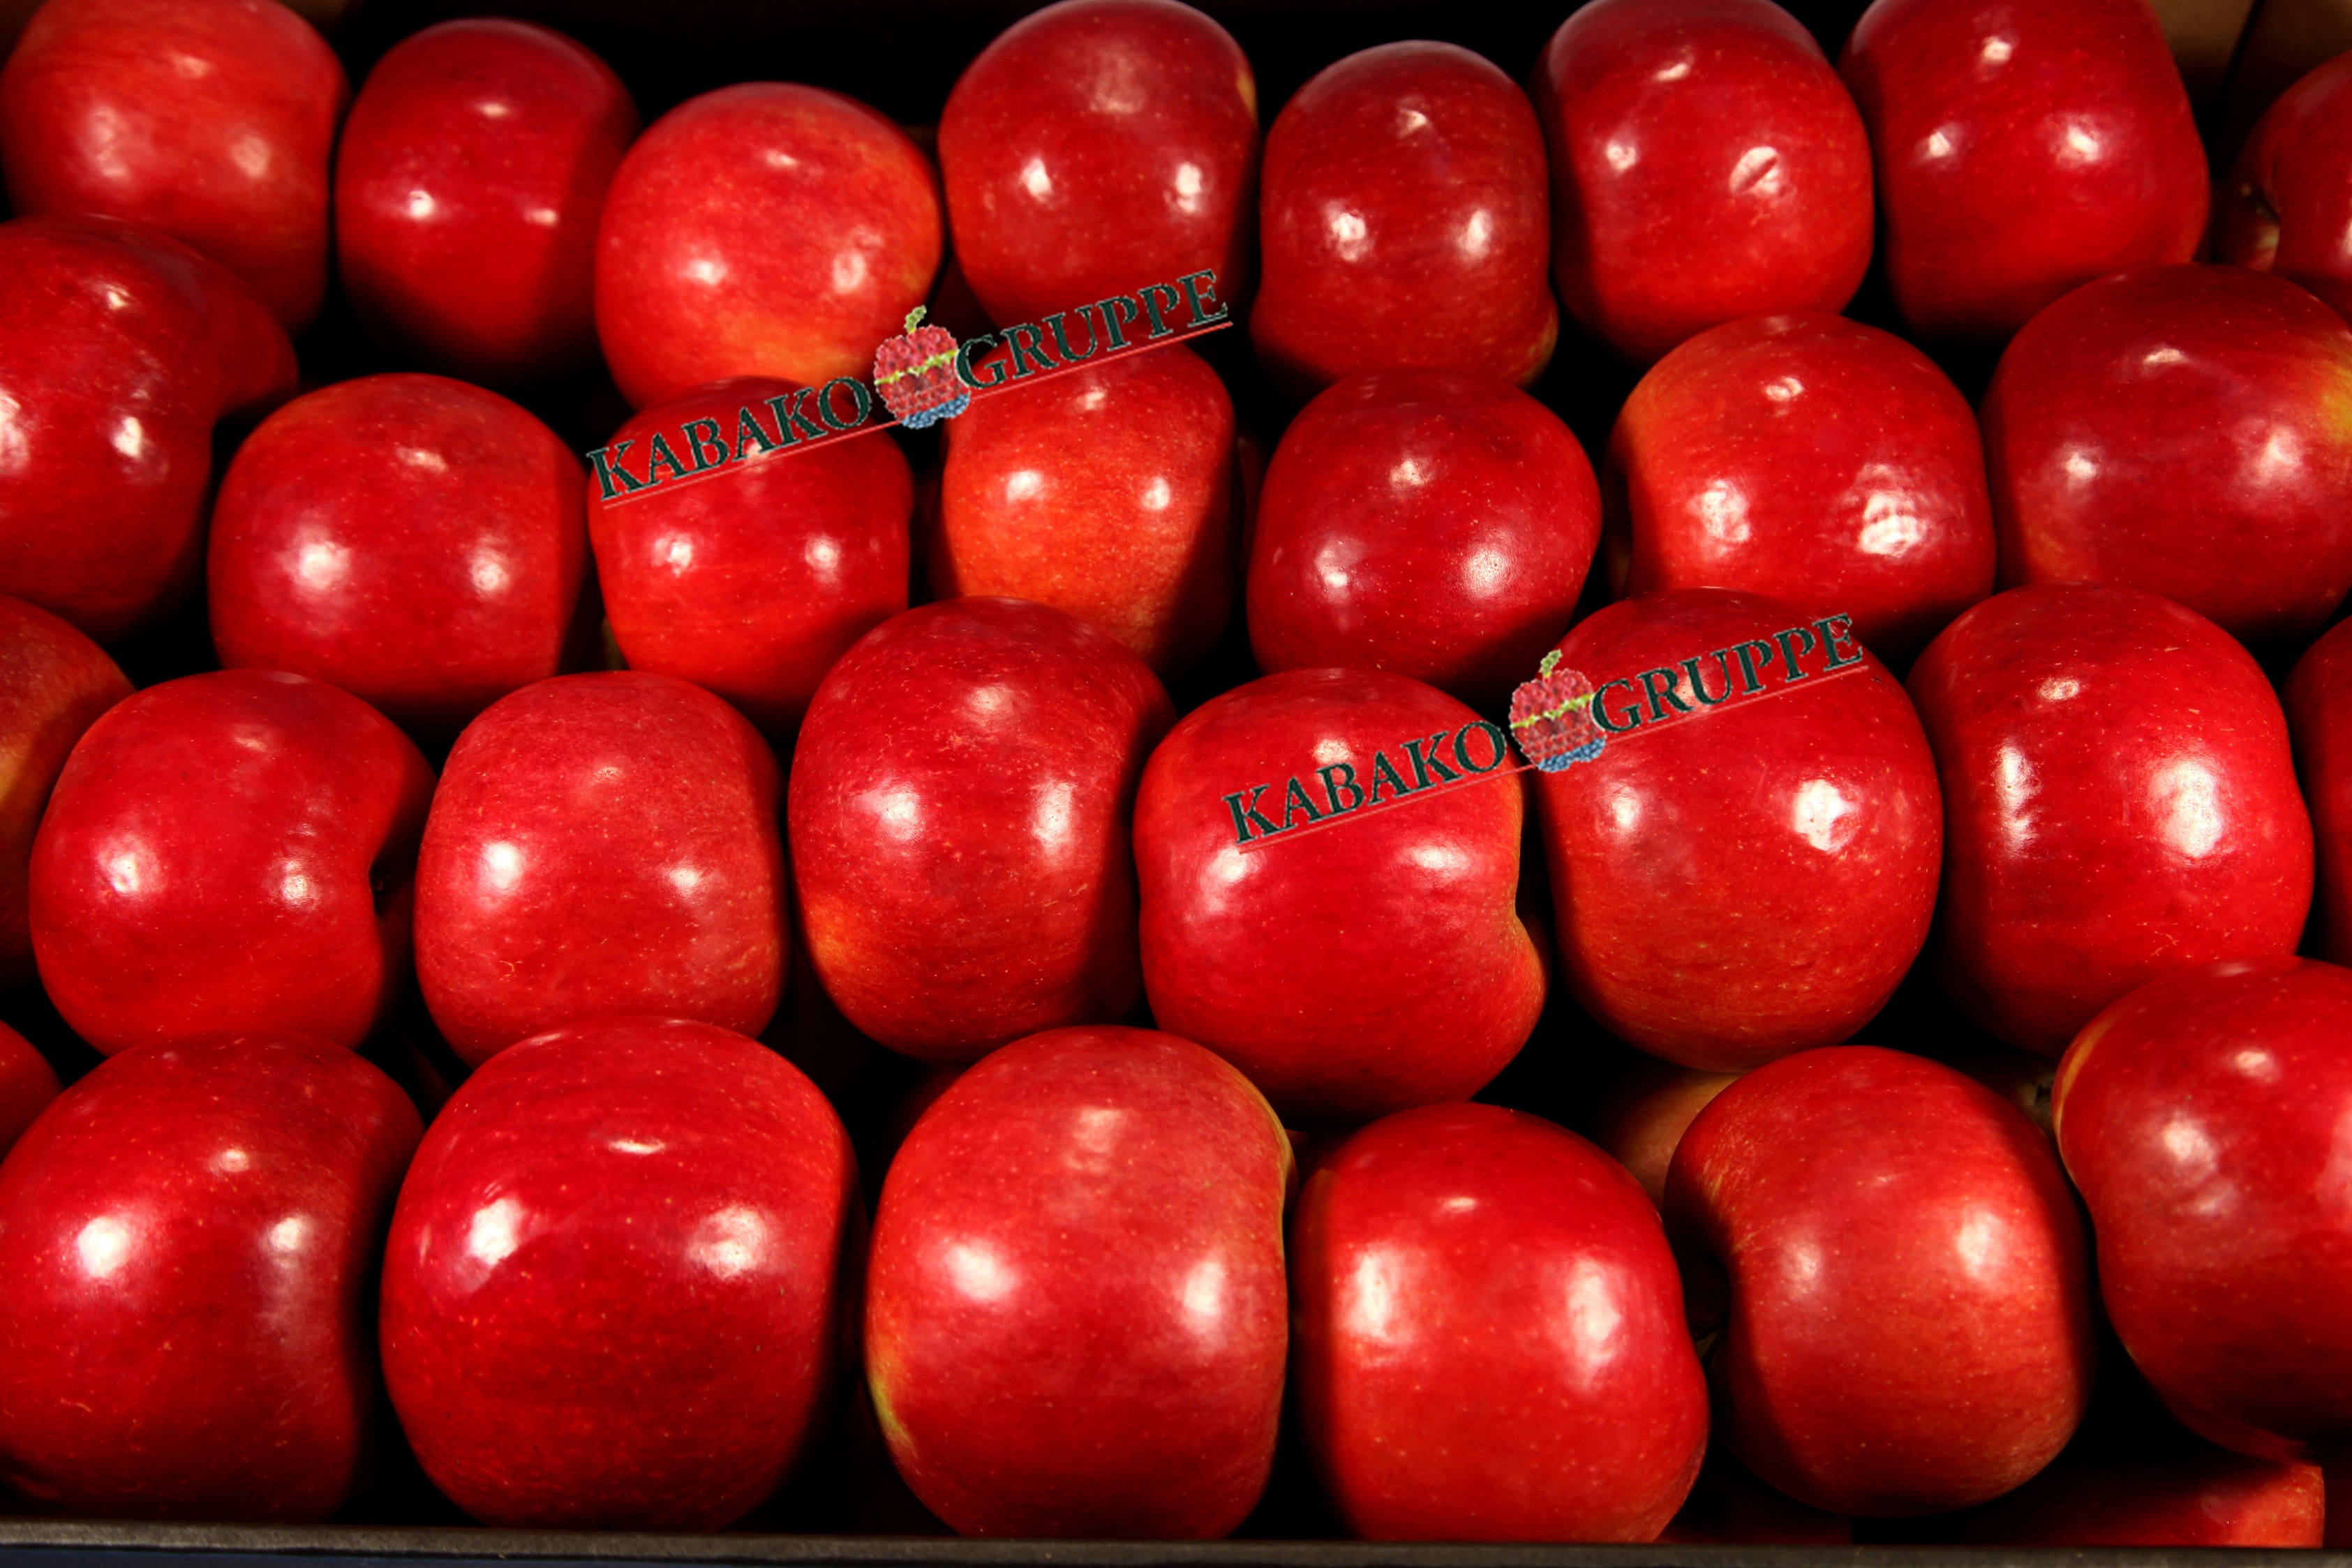 Frozen (IQF) Apples 58